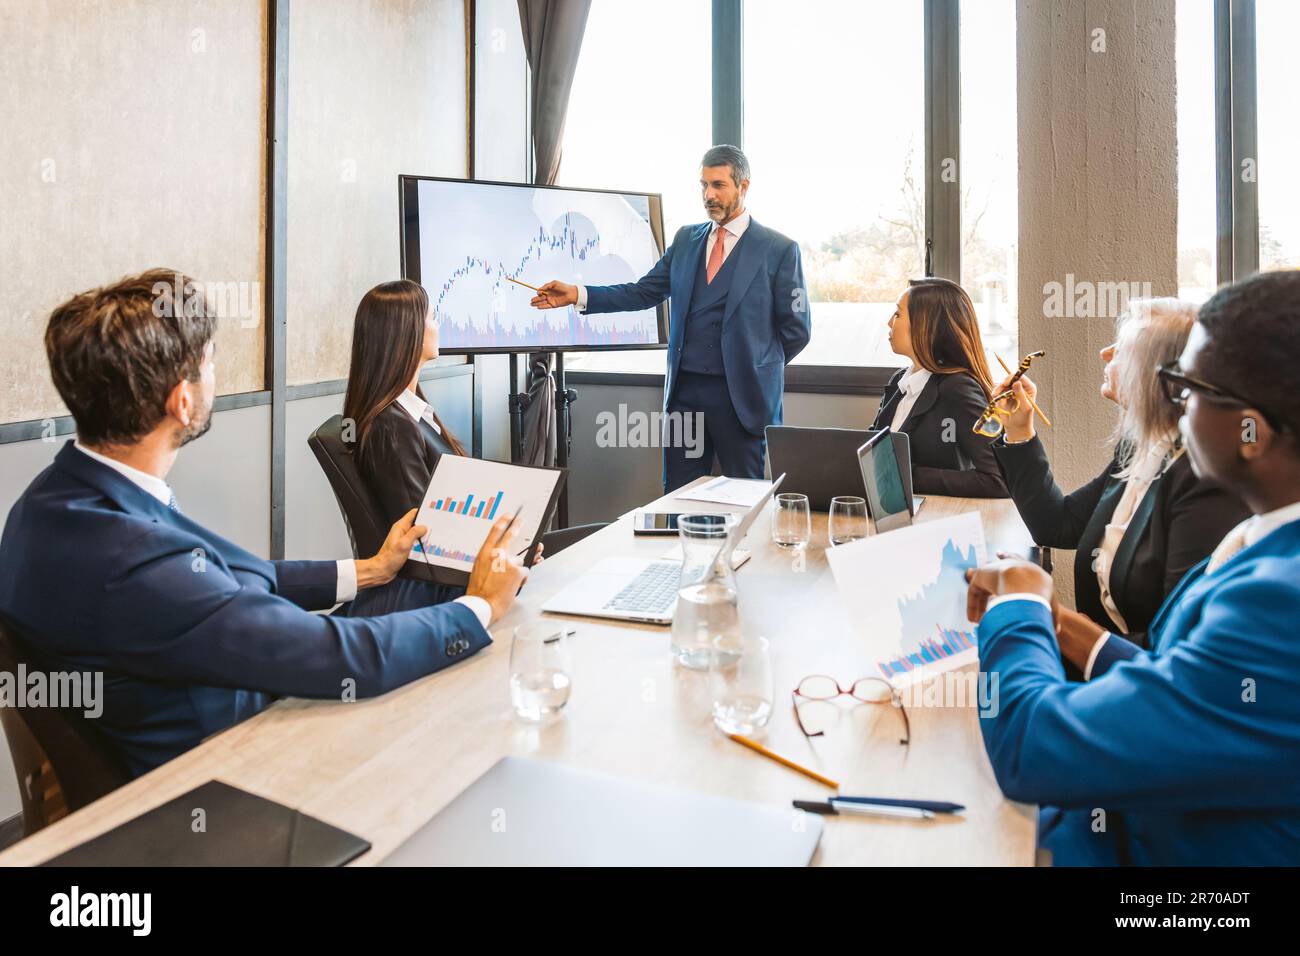 Un dirigeant de sexe masculin pointe vers l'écran et explique les tableaux financiers à ses collègues lors d'une réunion d'affaires dans une salle de réunion ensoleillée Banque D'Images